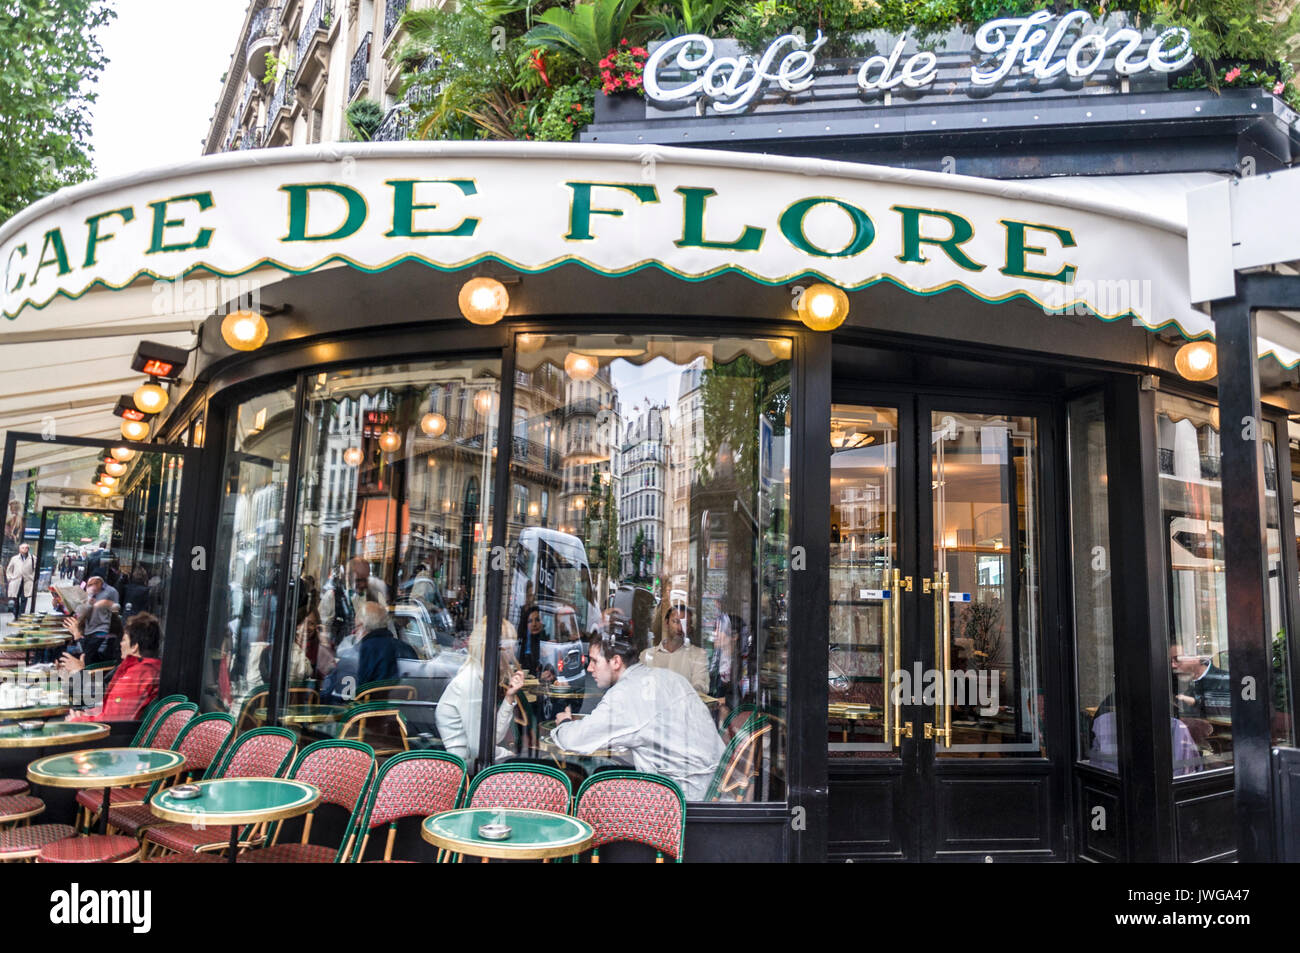 Cafe de Flore in Paris, France exterior frontage Stock Photo